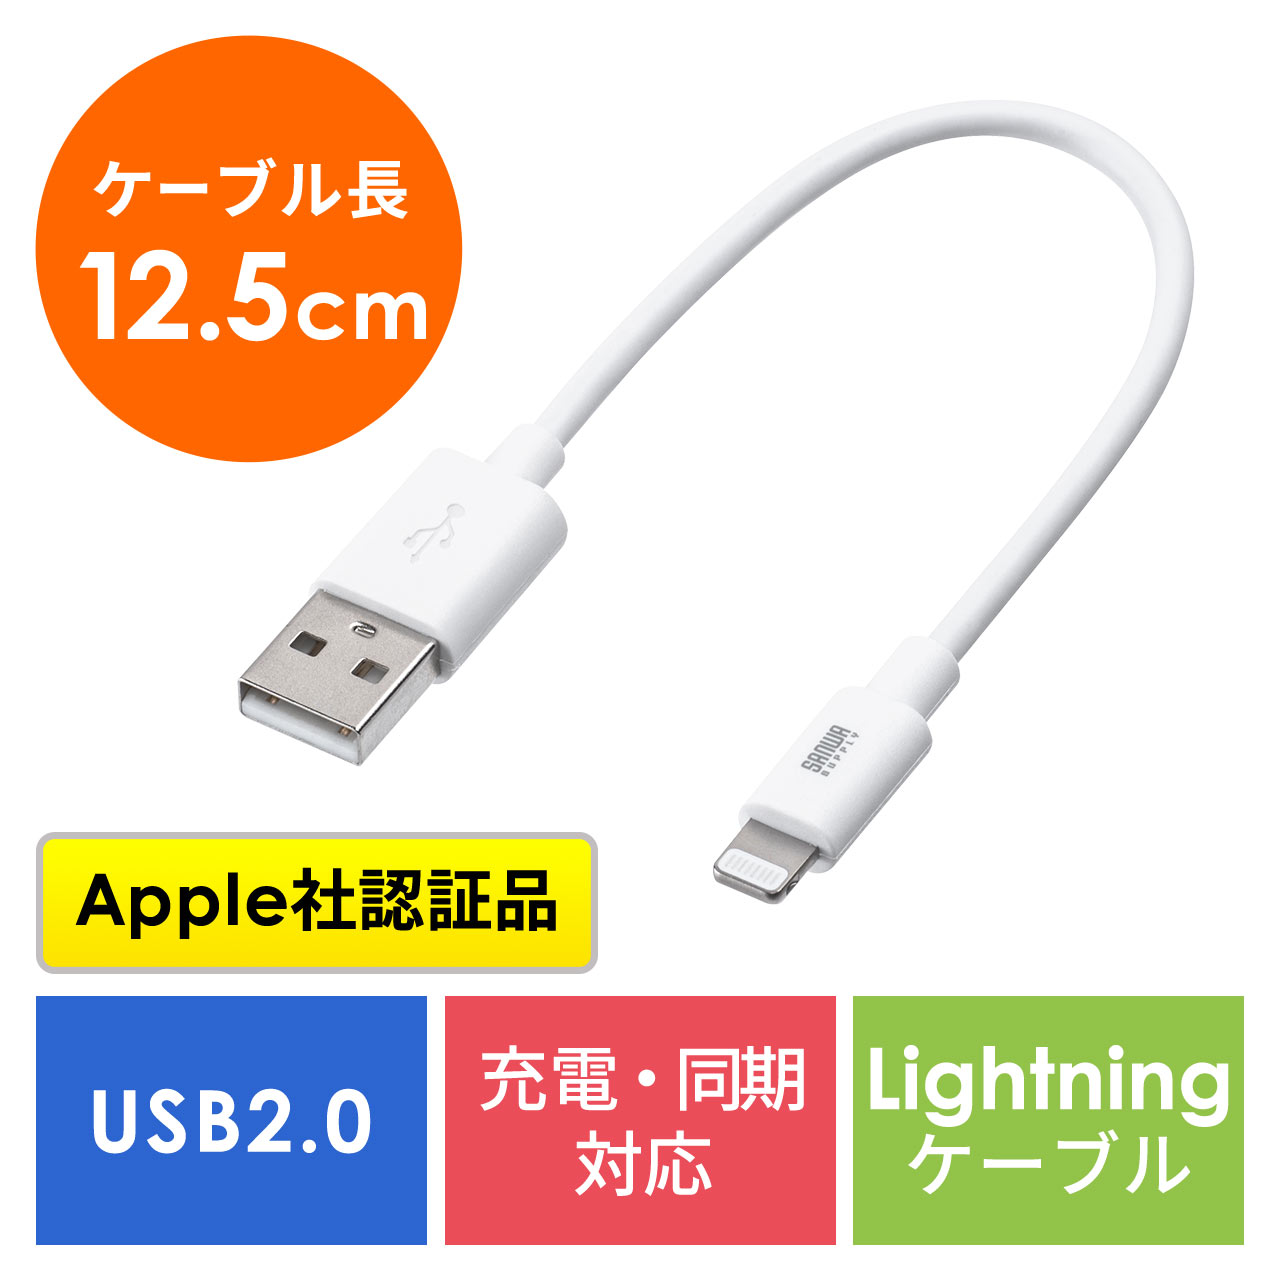 短い Lightningケーブル 12cm iPhone iPad 充電 データ通信 Apple MFi認証品 ホワイト 500-IPLM010WK2